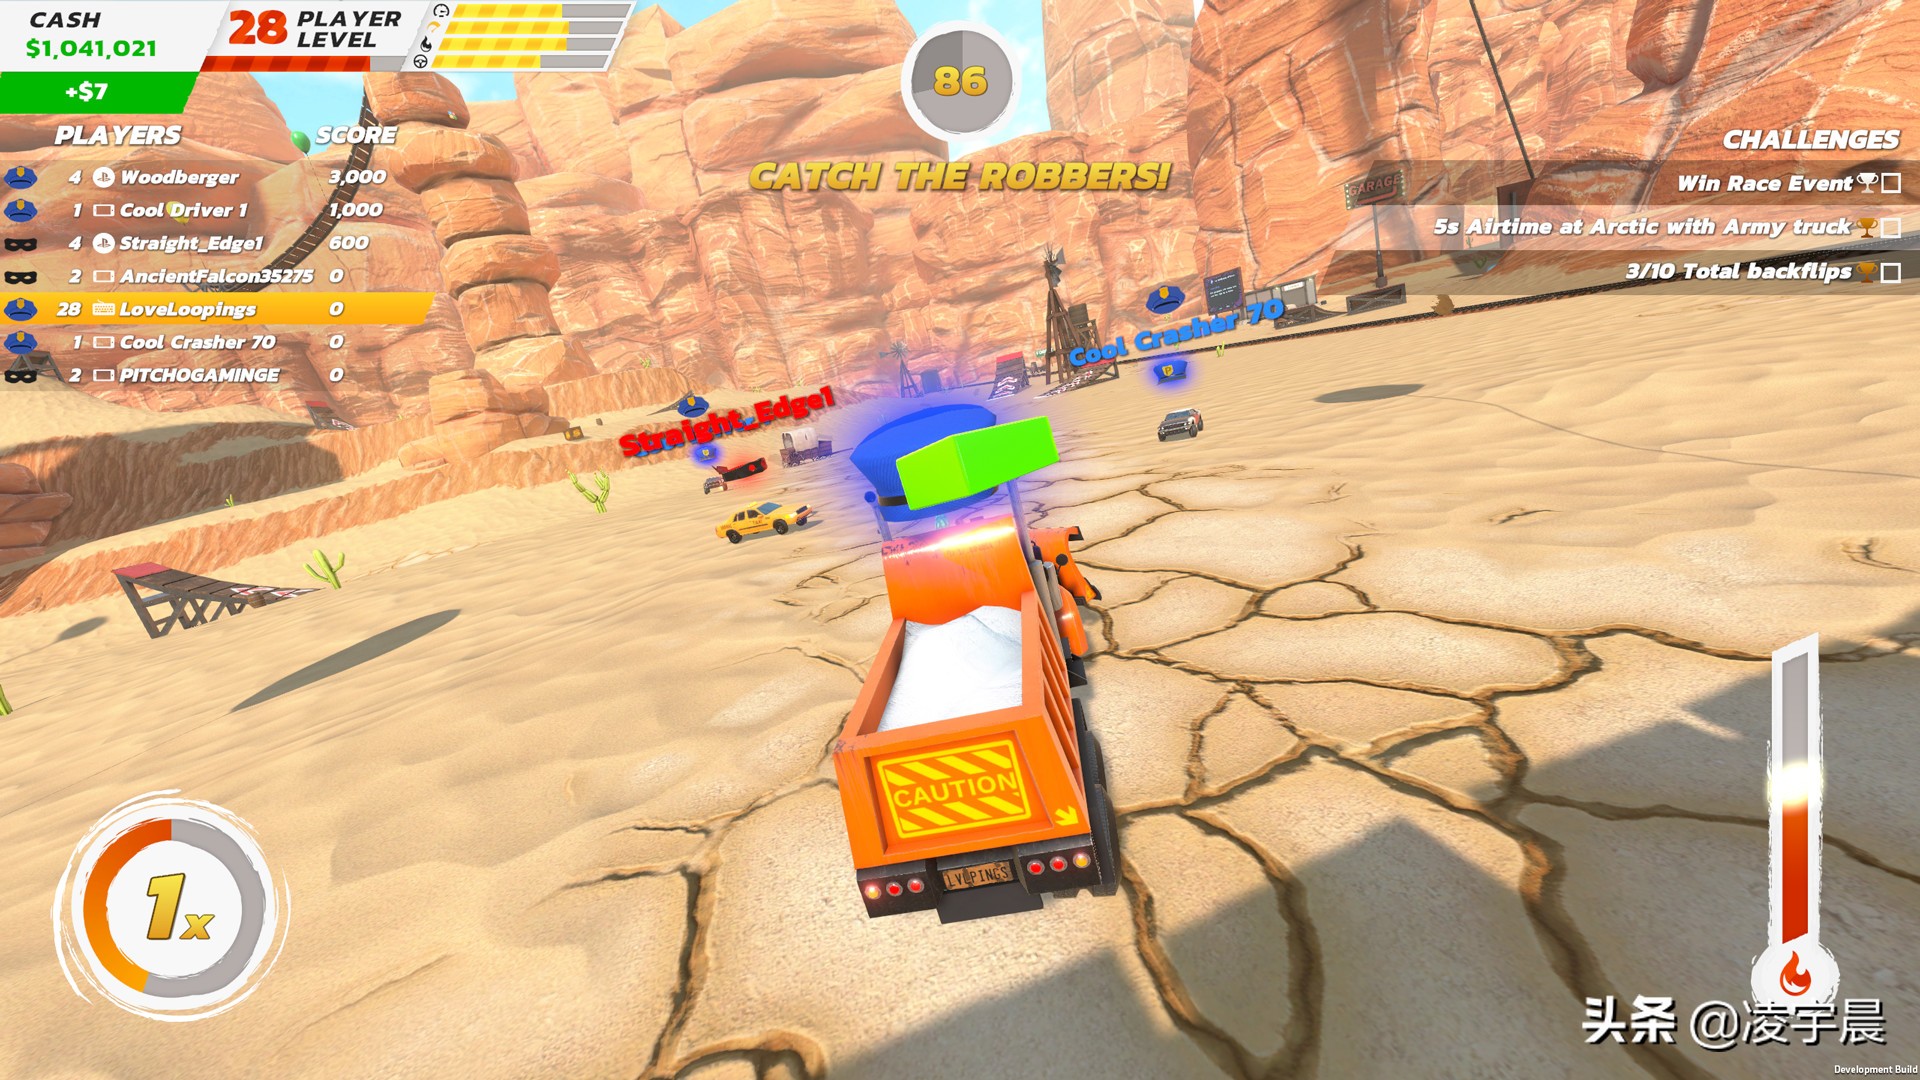 《疯狂驾驶3》体验评测：乐趣尚可的沙盒竞速游戏